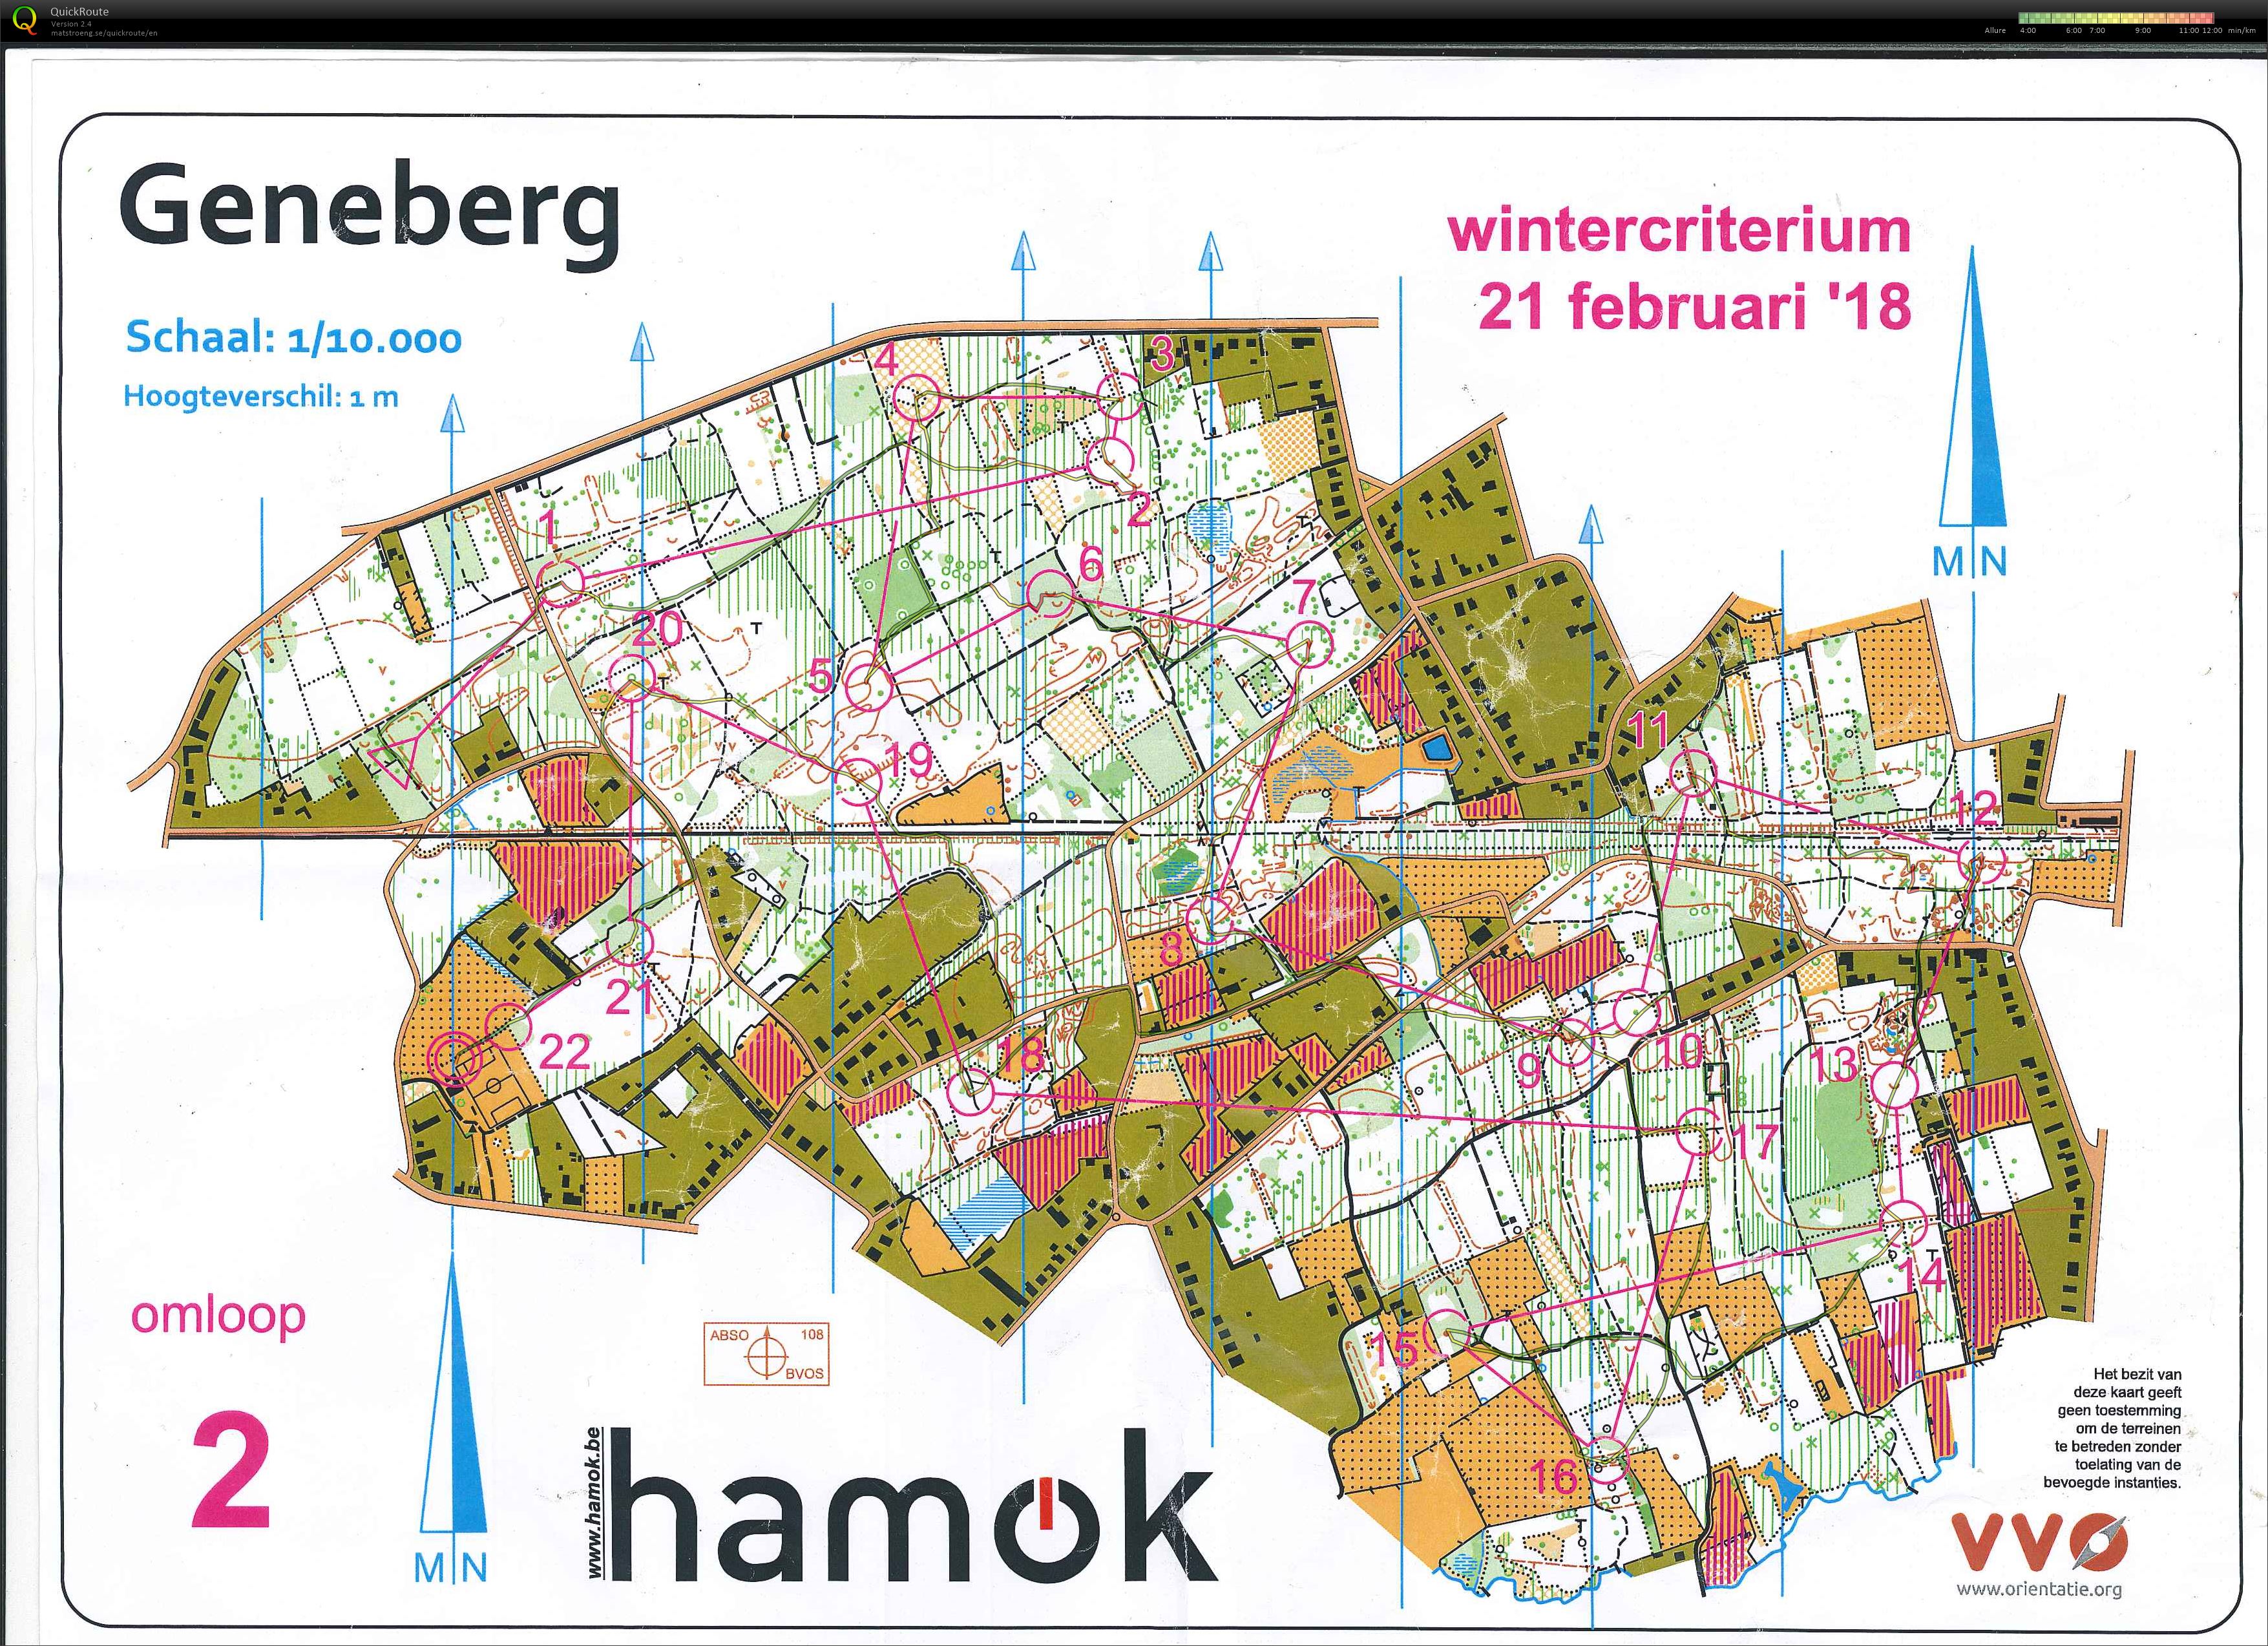 Geneberg (2018-01-21)